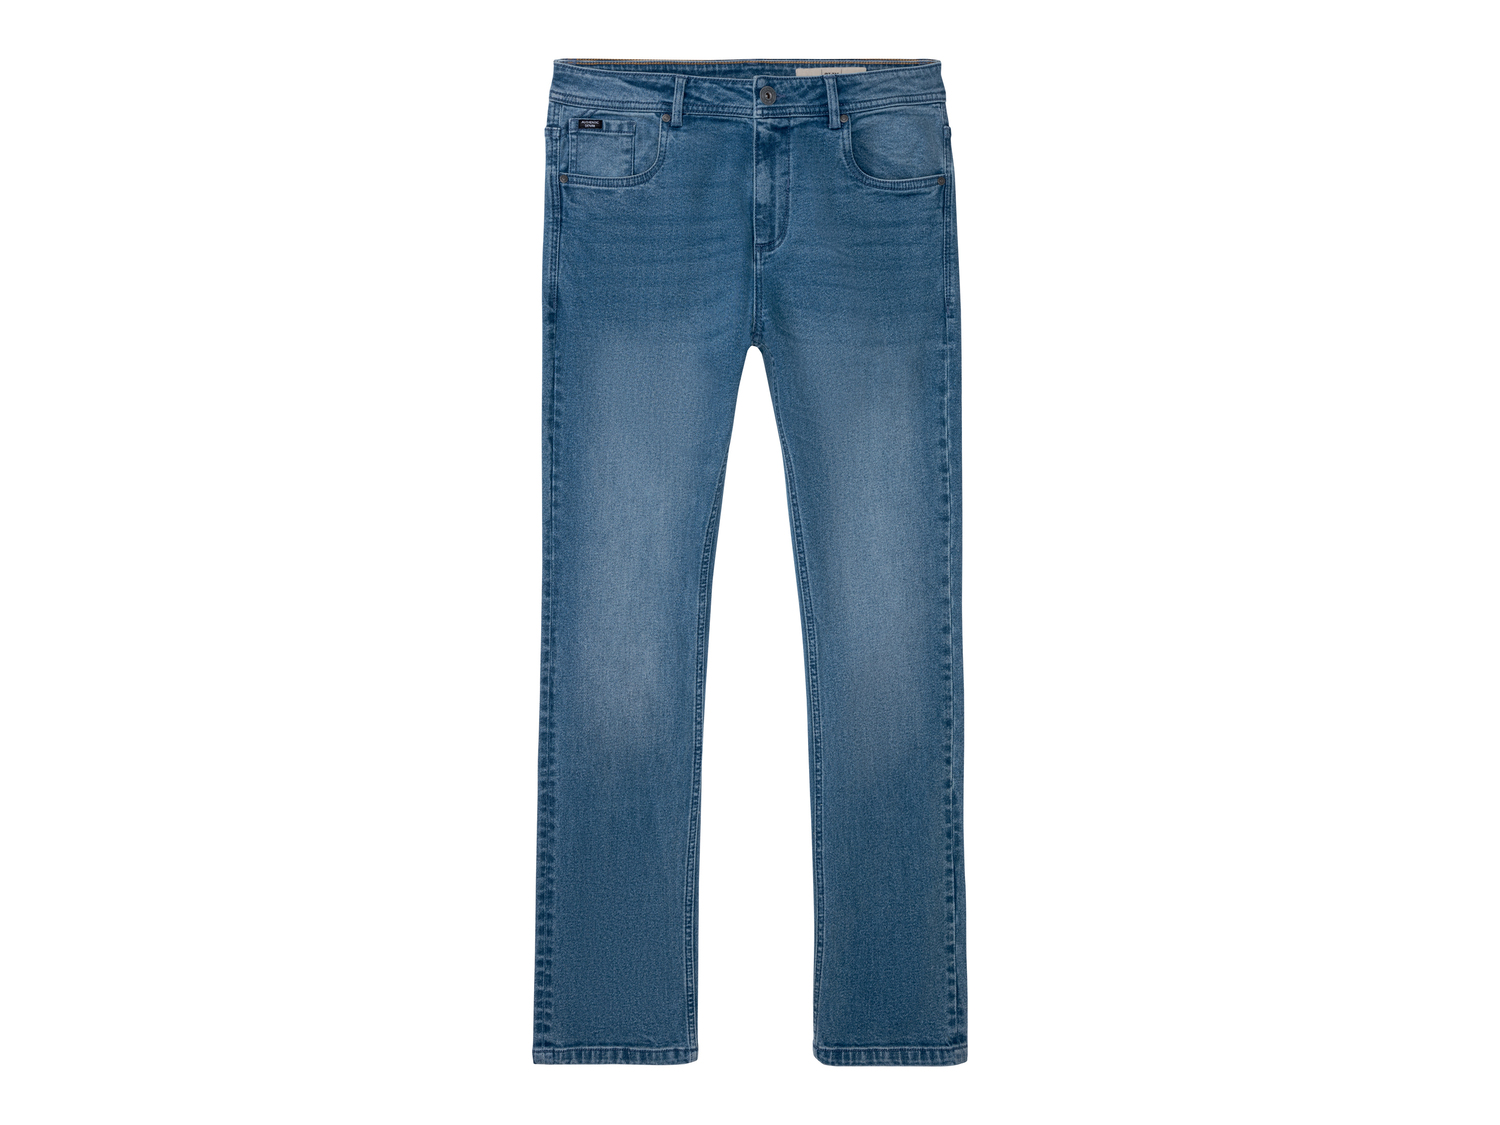 Jeans Slim Fit da uomo Livergy, prezzo 11.99 &#8364; 
Misure: 46-54
Taglie disponibili

Caratteristiche
 ...